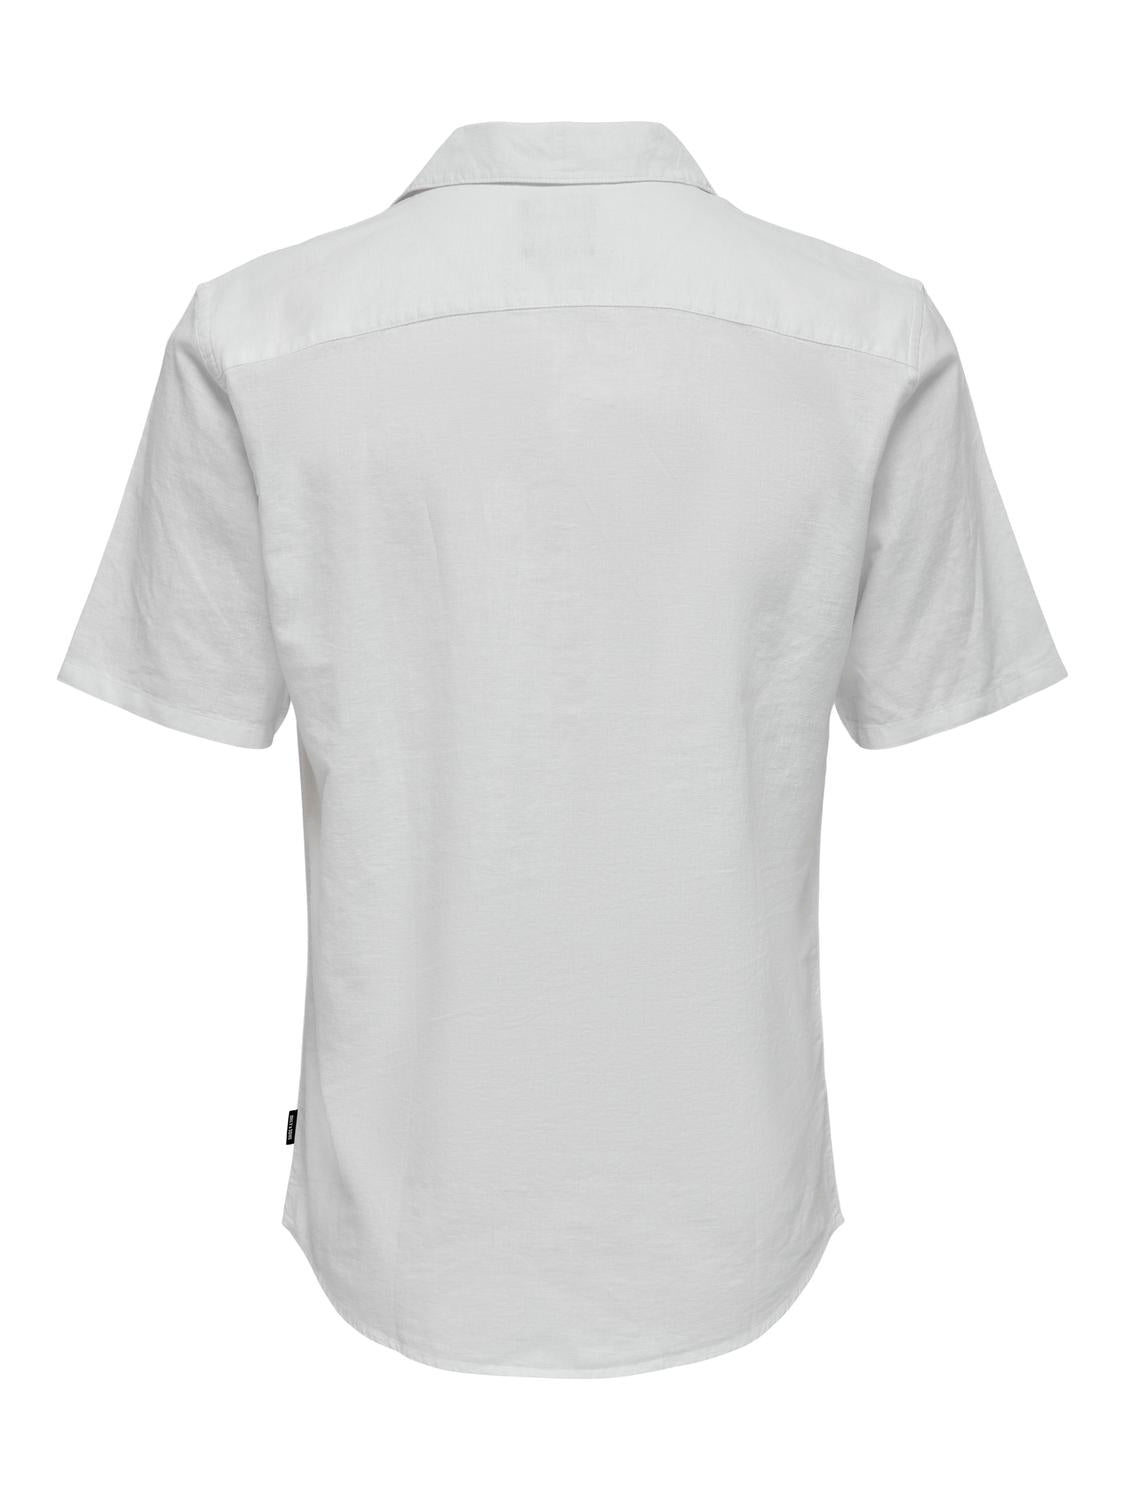 ONSCAIDEN Shirts - White